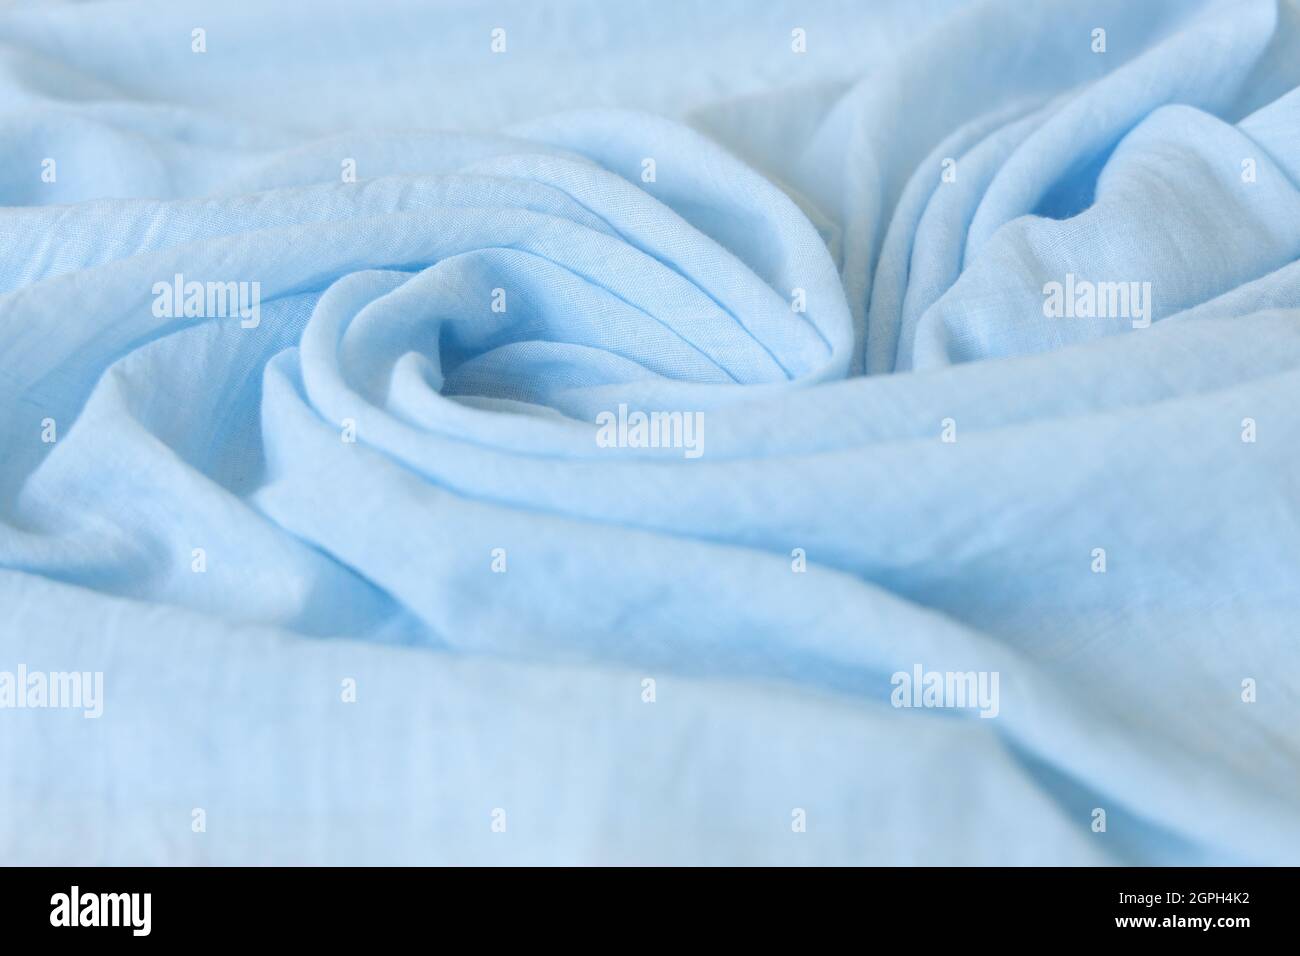 Hellblaue Farbe Tuch Baby Mädchen. Weiche Musselin Babydecke Hintergrund. Baumwollkleidung und Textilien. Natürliche Bio-Gewebe Textur. Nahaufnahme. Stockfoto